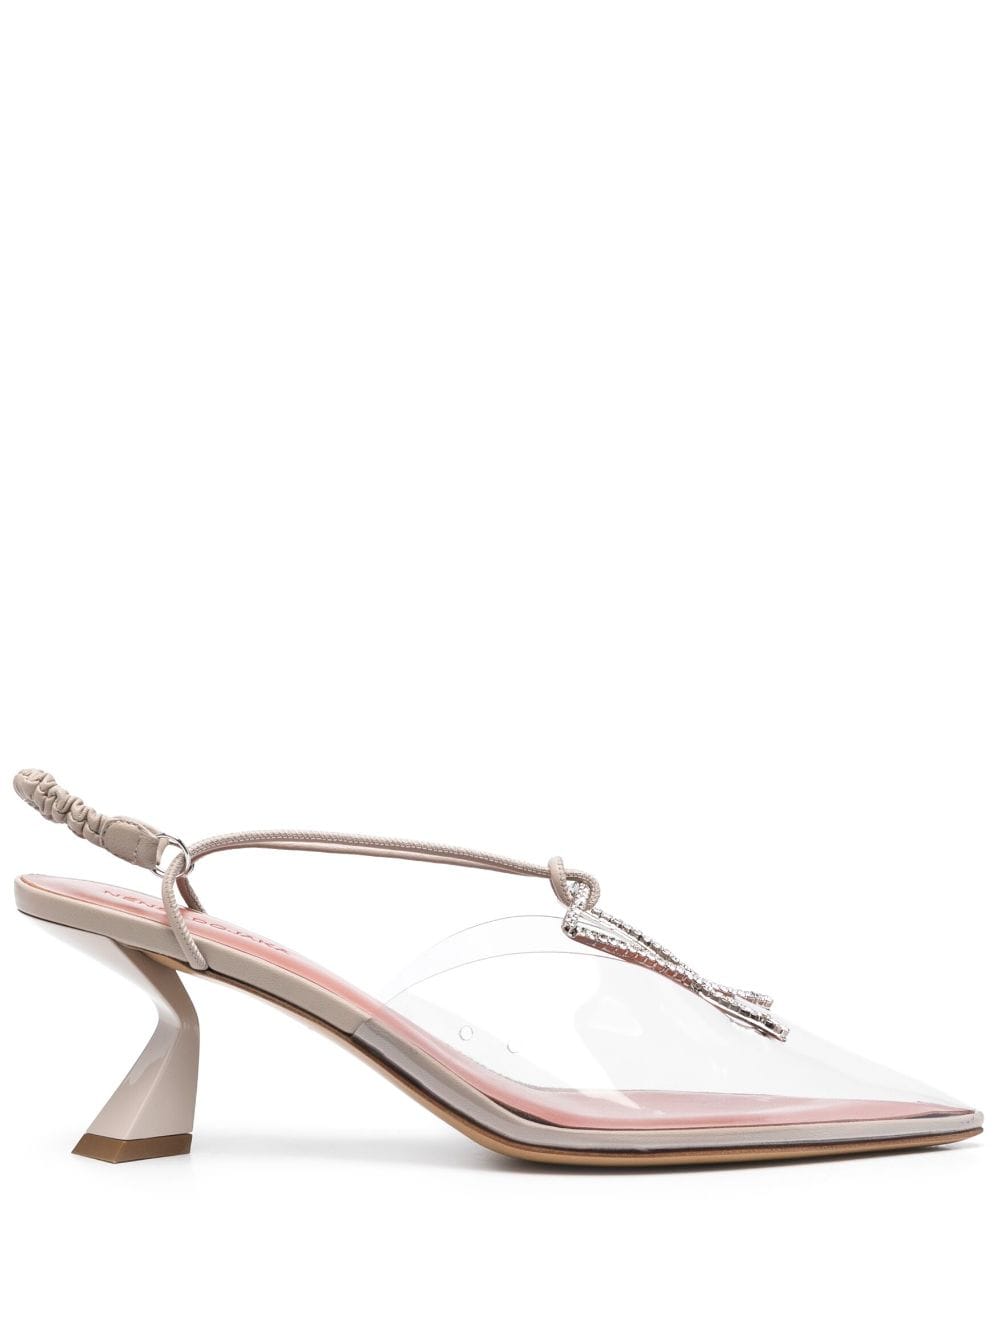 Nensi Dojaka crystal-embellished PVC slingback sandals - Neutrals von Nensi Dojaka